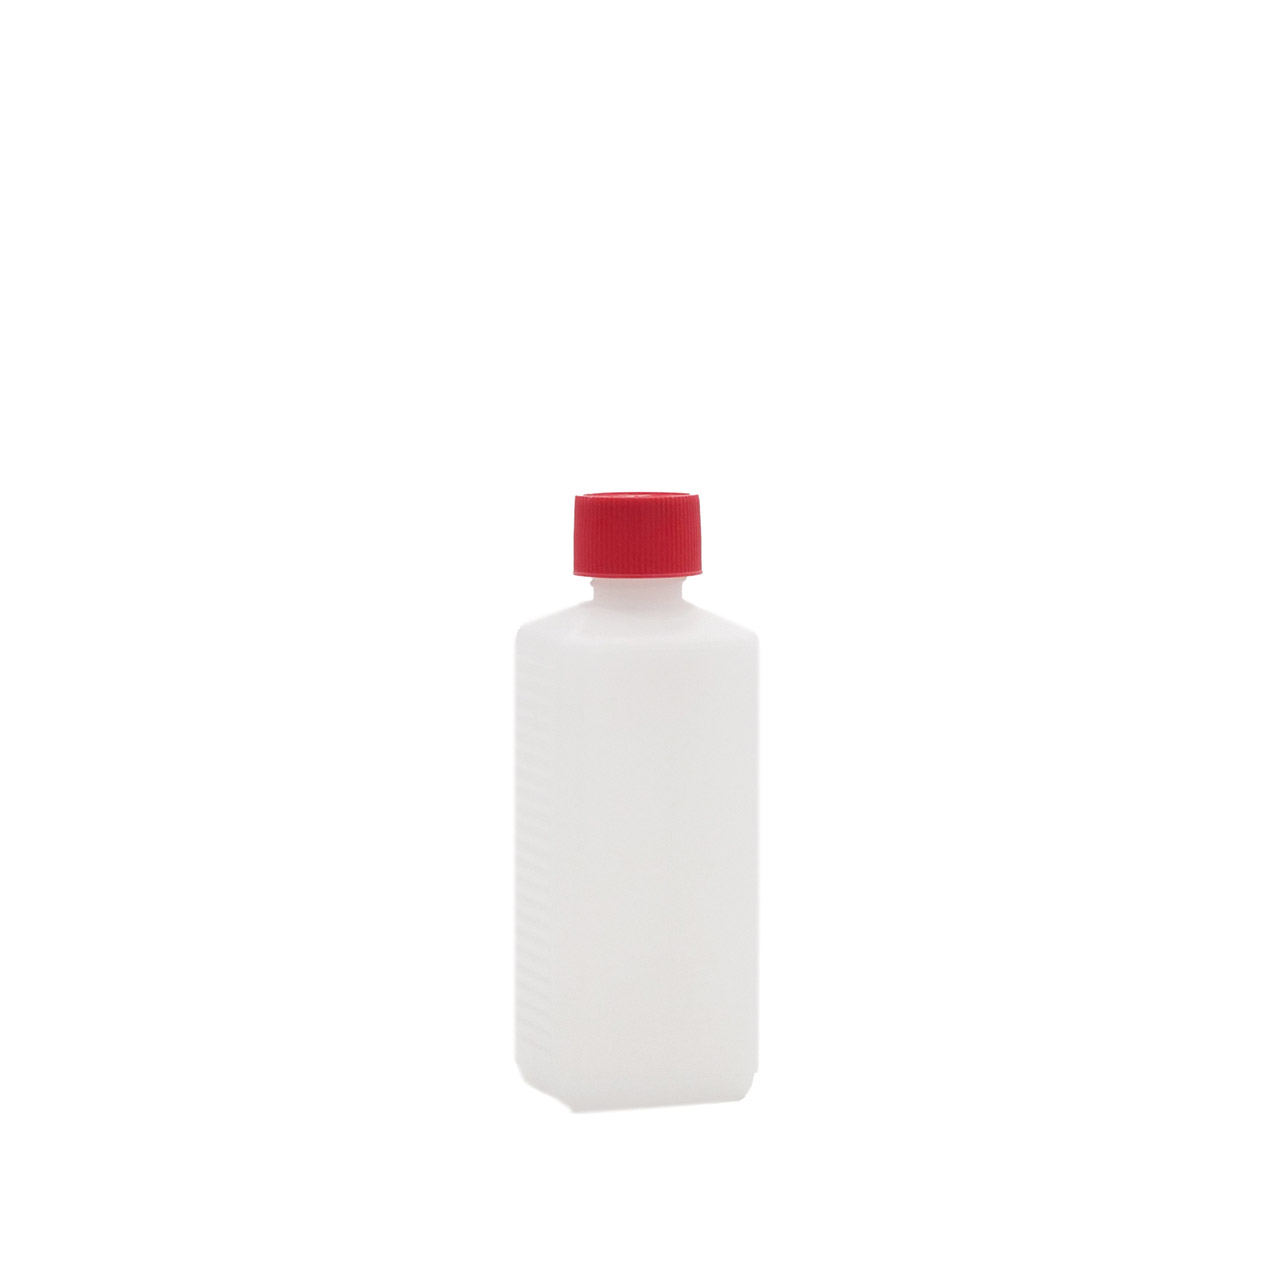 Bottle empty DIN 25 250 ml